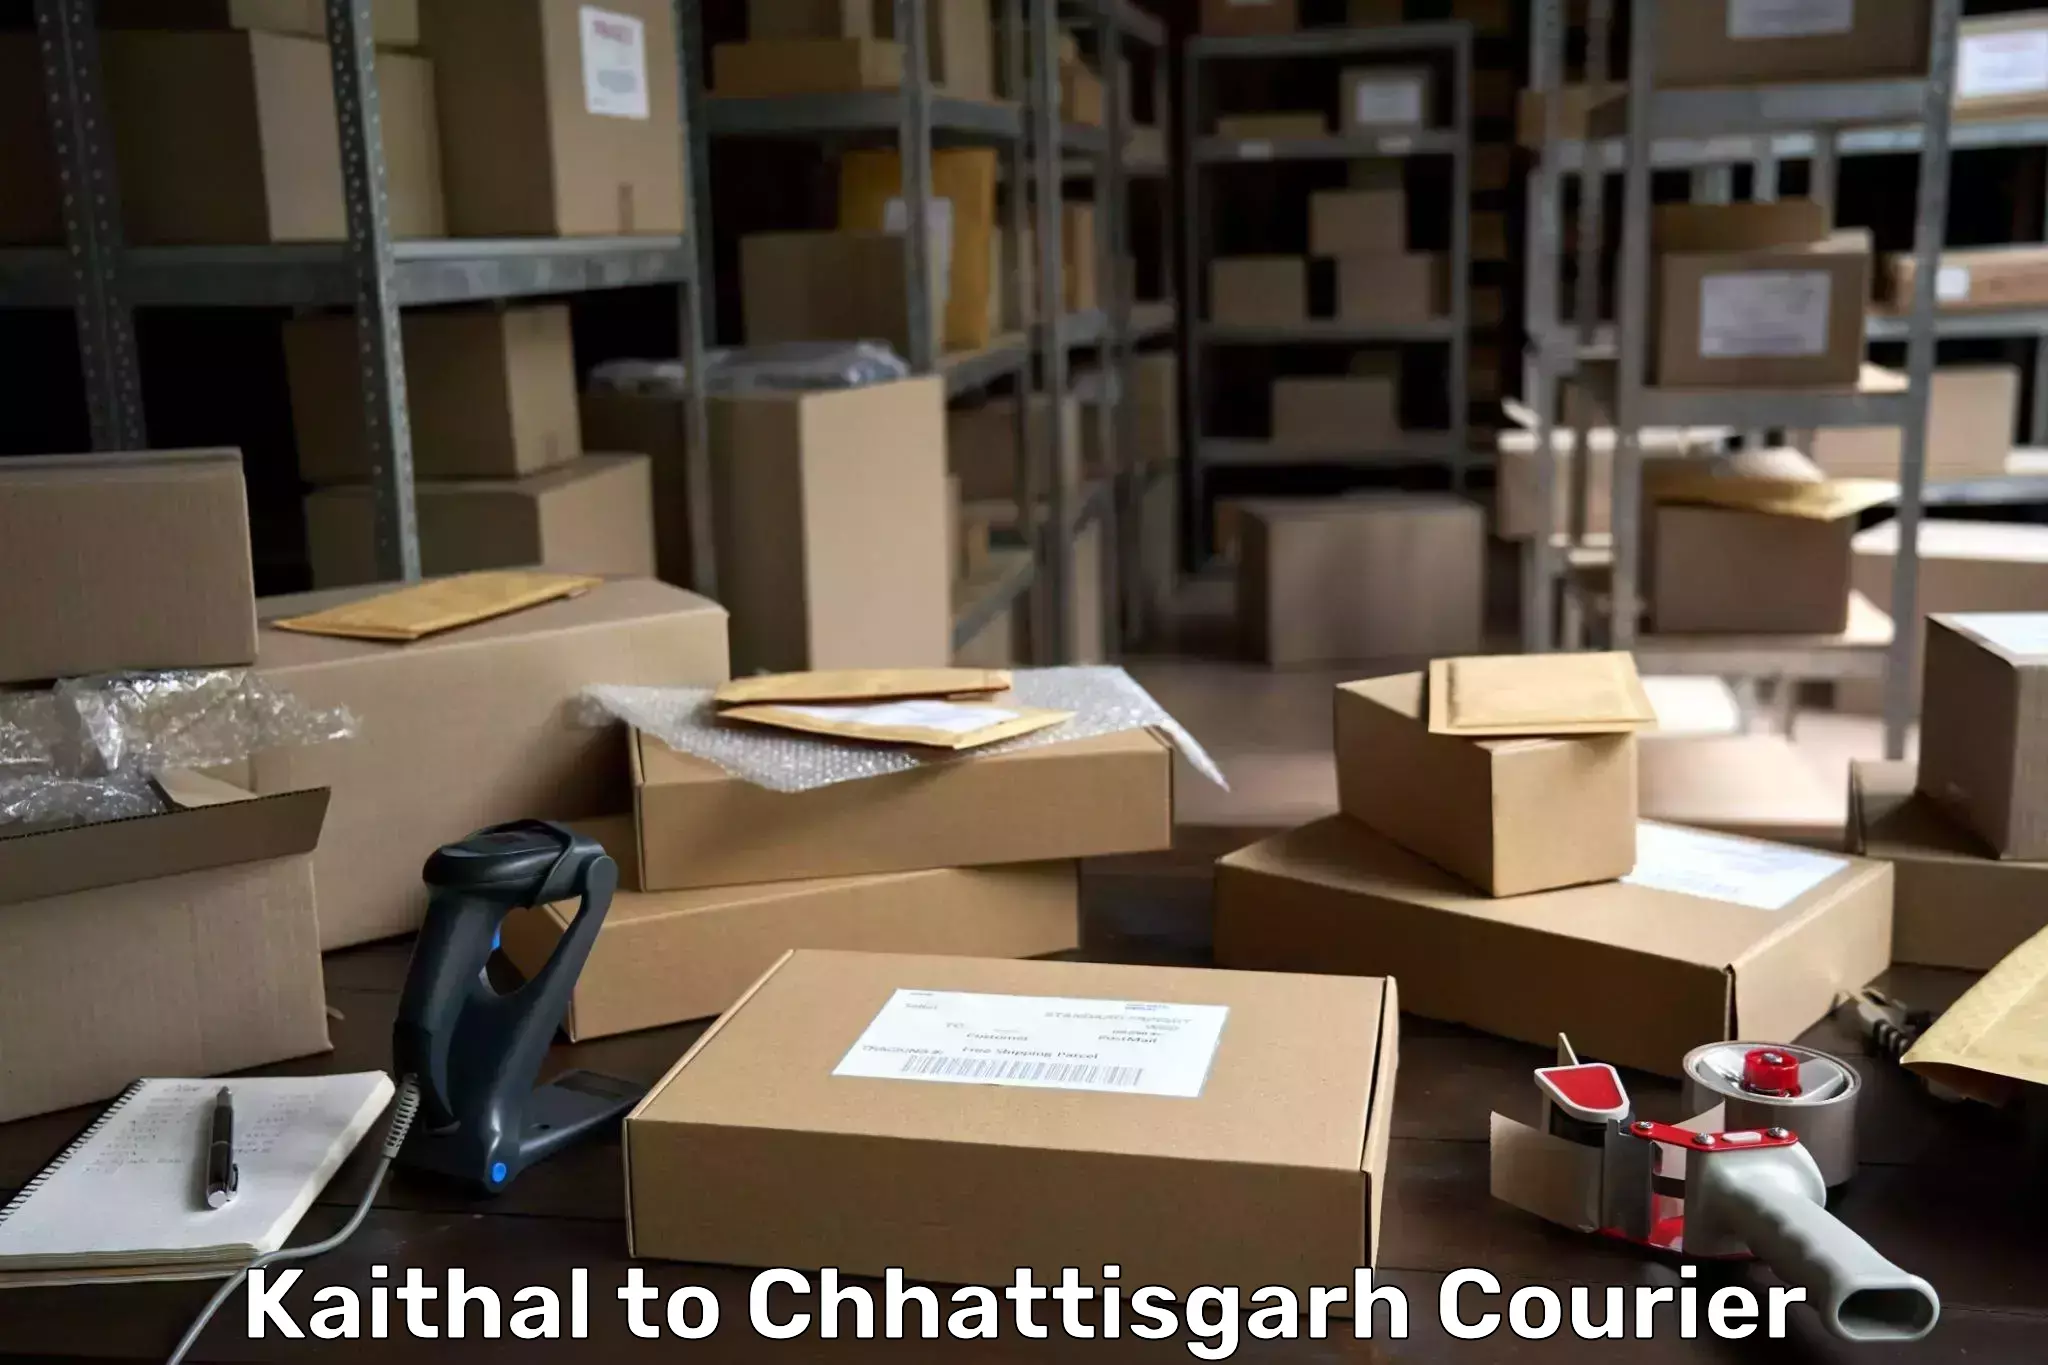 Premium courier services Kaithal to Chhattisgarh